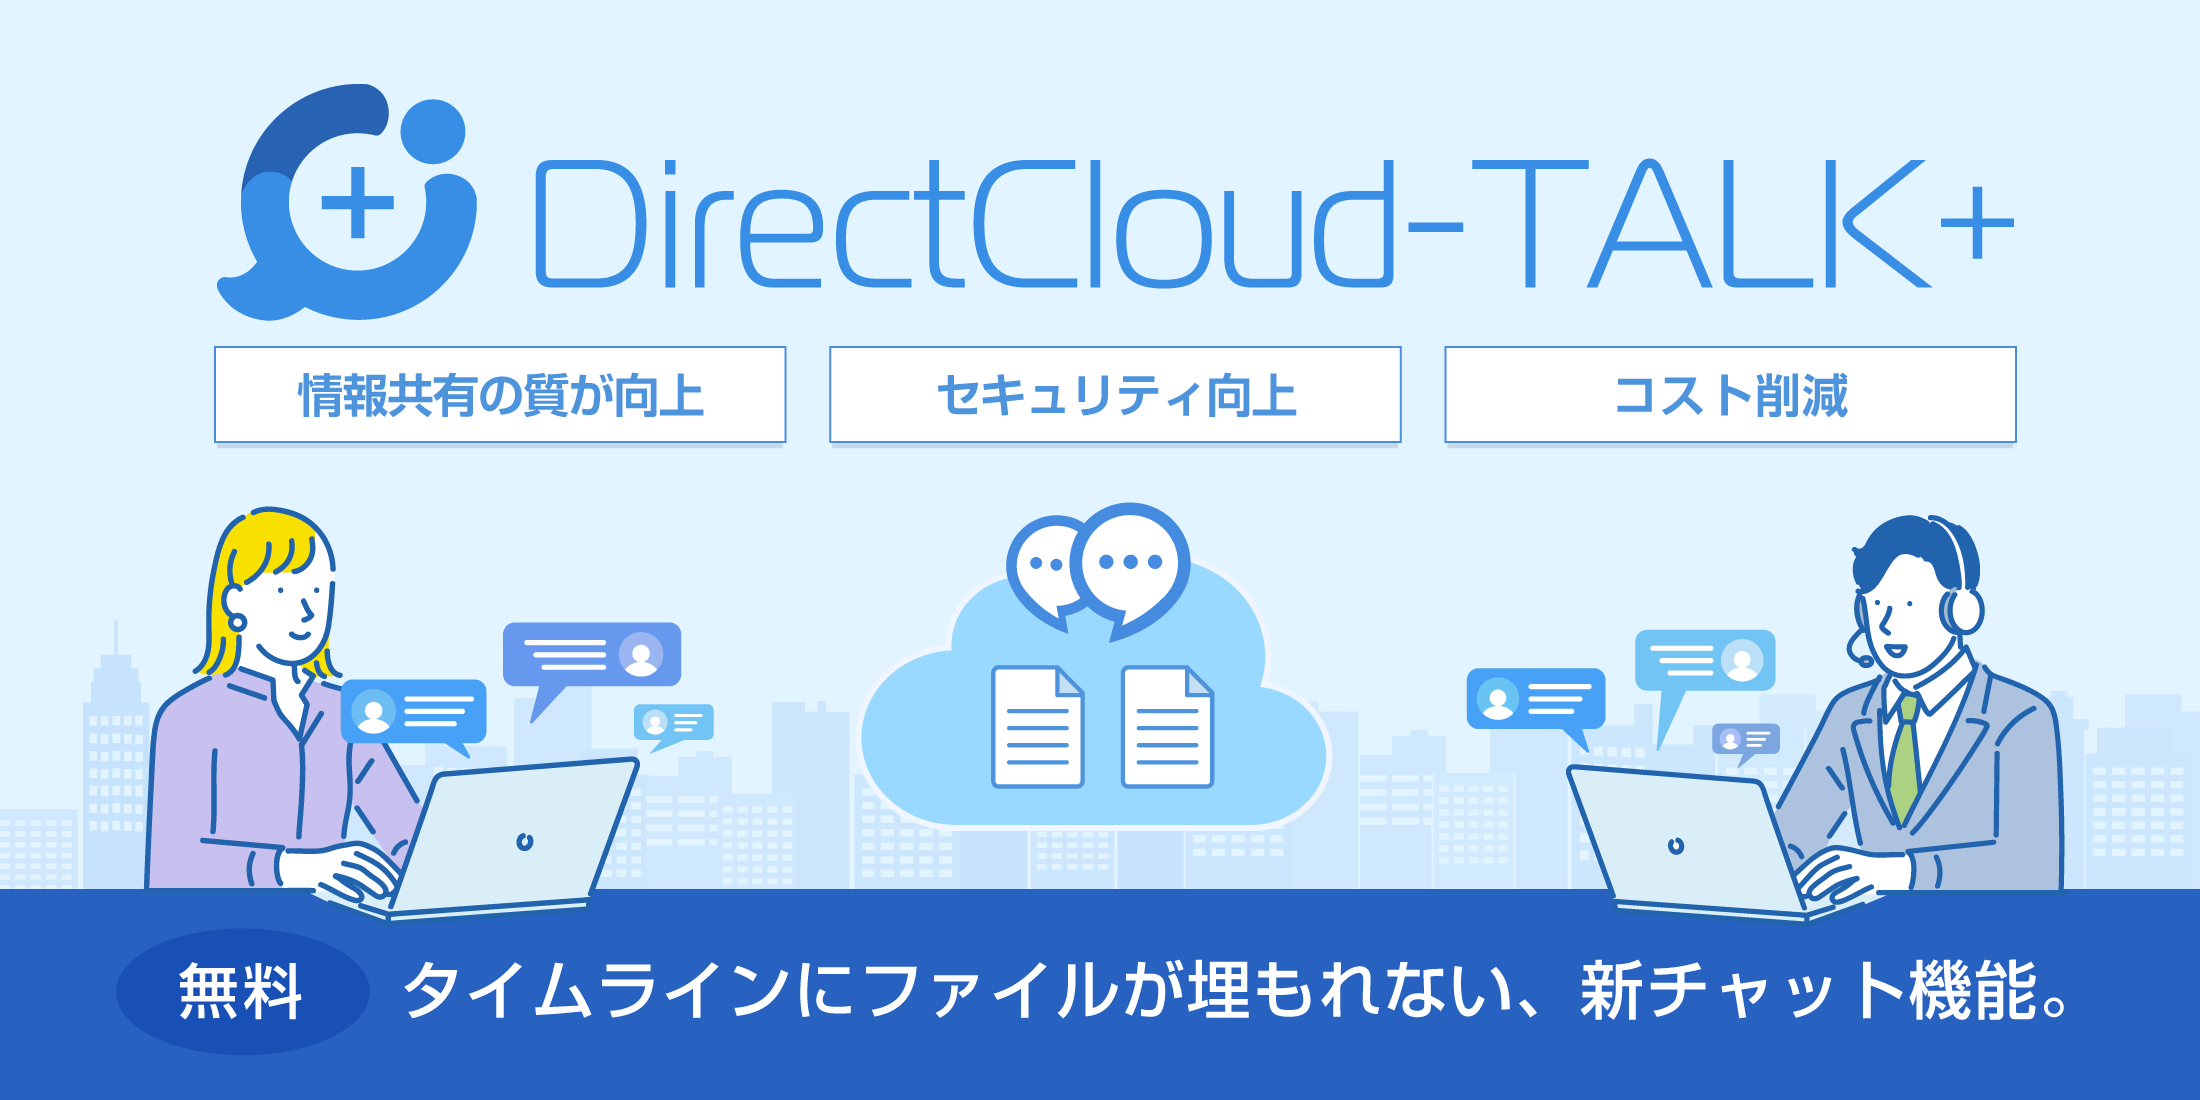 タイムラインにファイルが埋もれない、新チャット機能。「DirectCloud-TALK+」